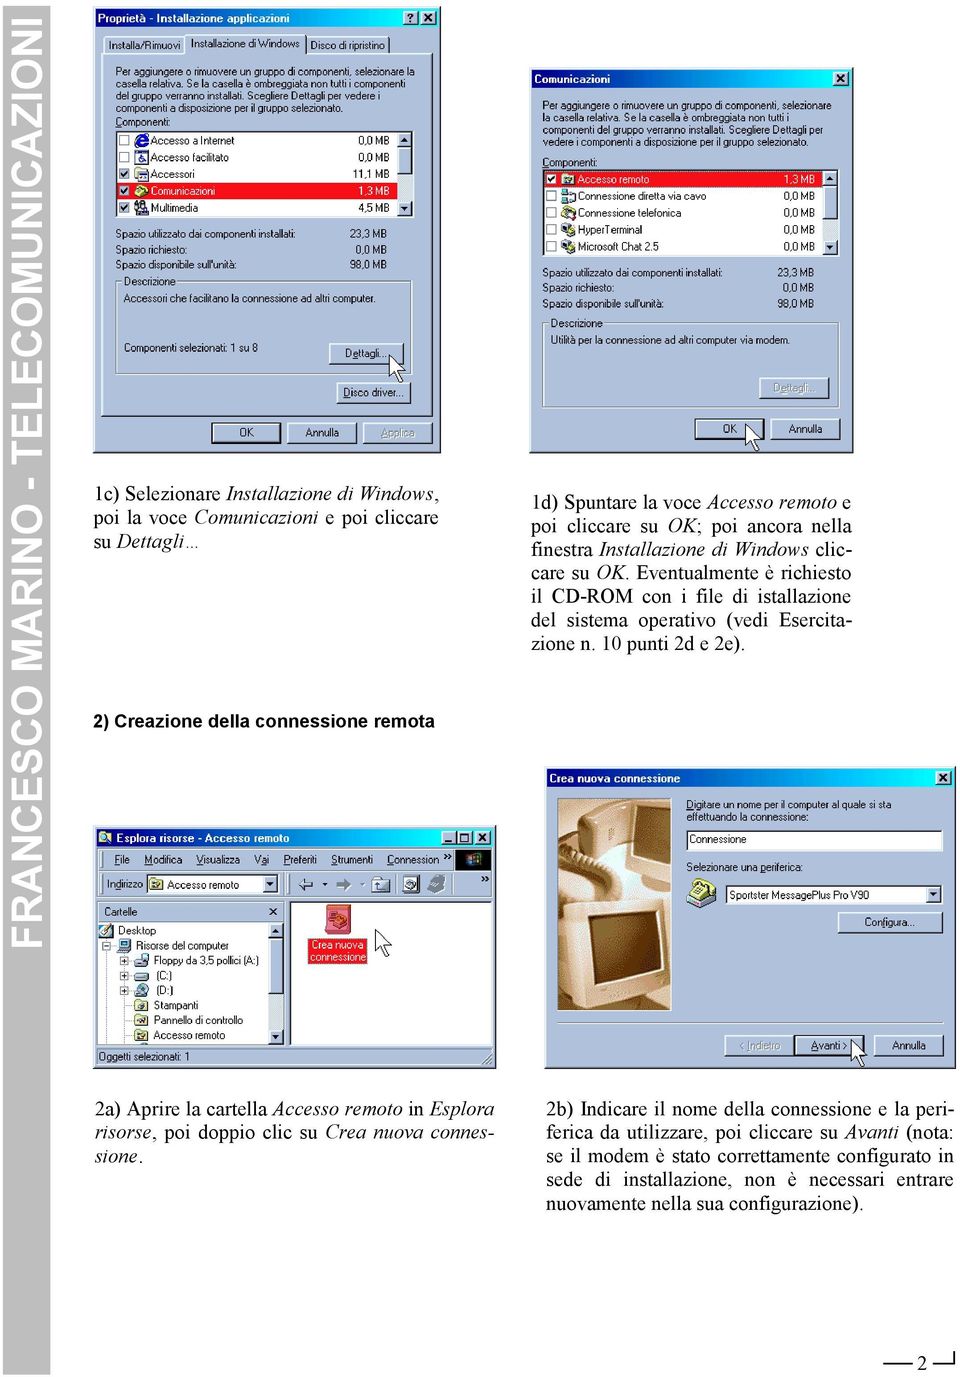 Eventualmente è richiesto il CD-ROM con i file di istallazione del sistema operativo (vedi Esercitazione n. 10 punti 2d e 2e).